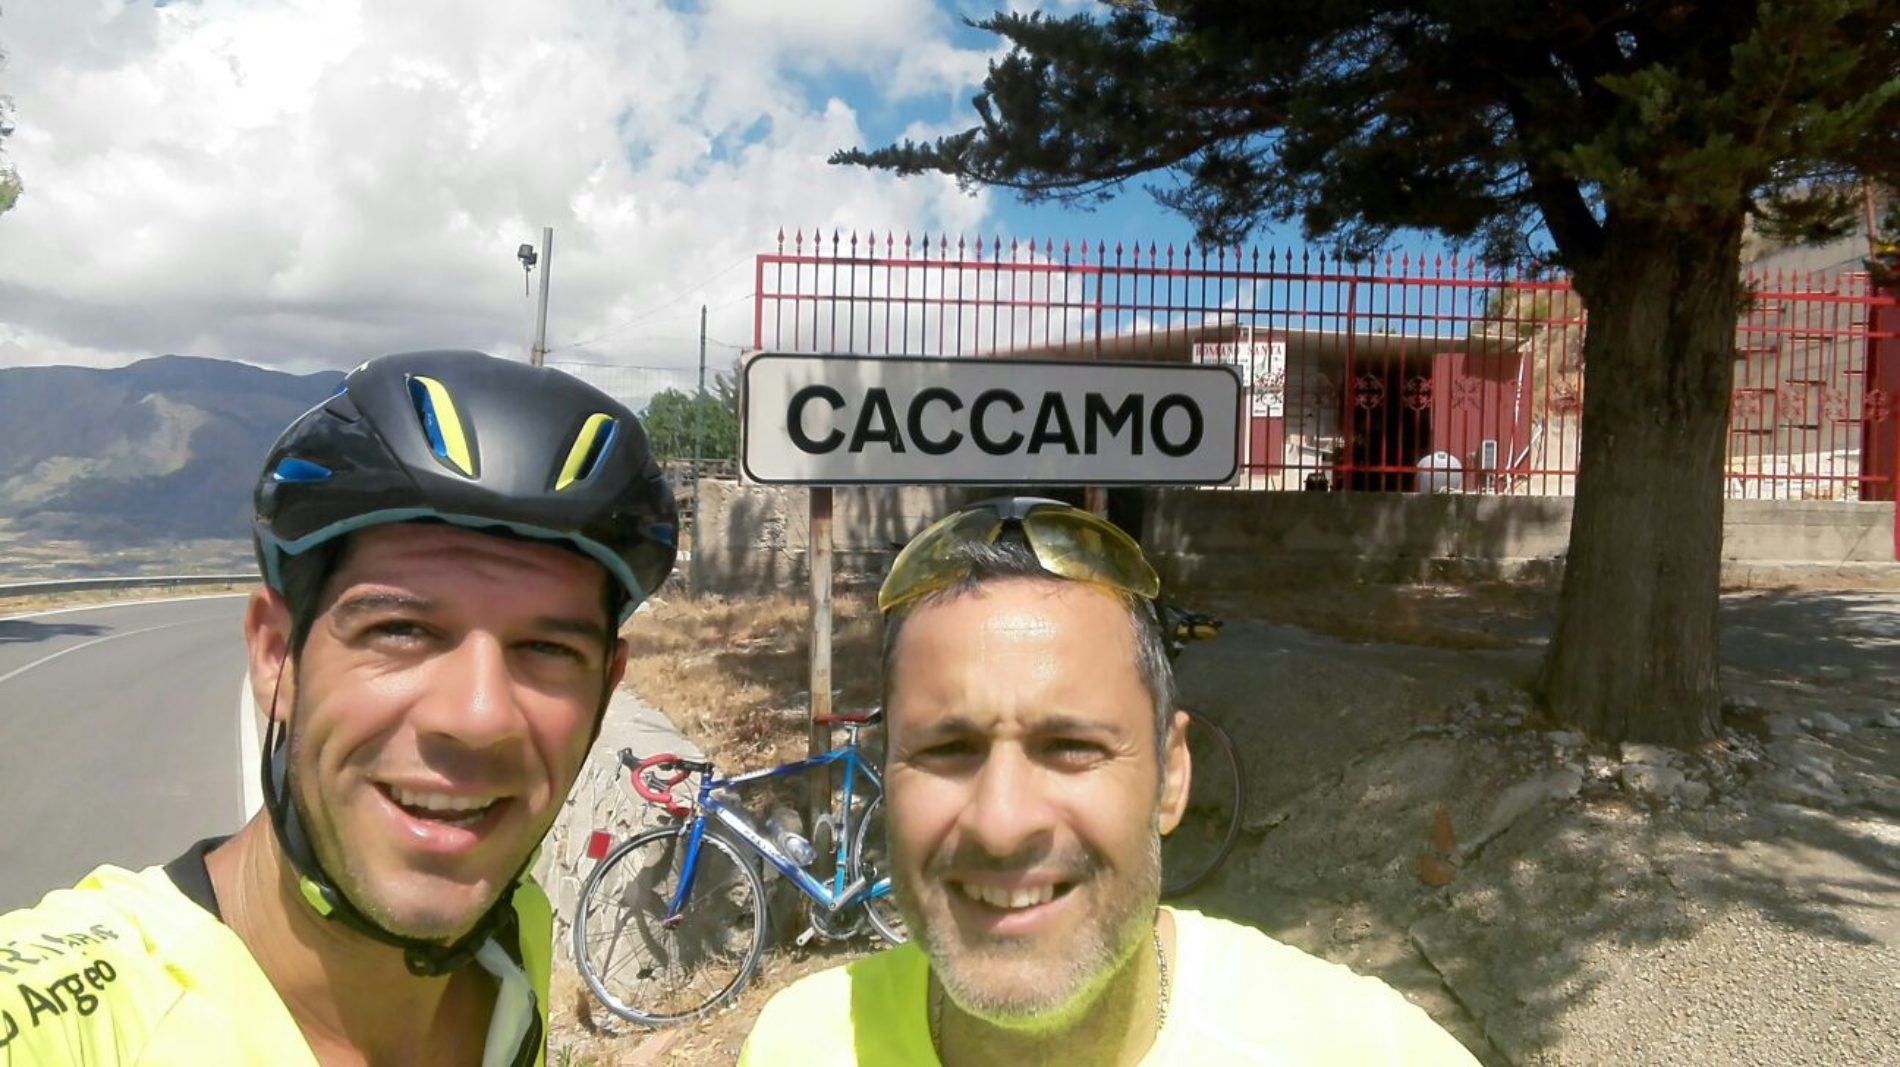 Cumia e Avola in bici dalla loro cittadina raggiungono Palermo affrontando le “Madonie” e il forte caldo